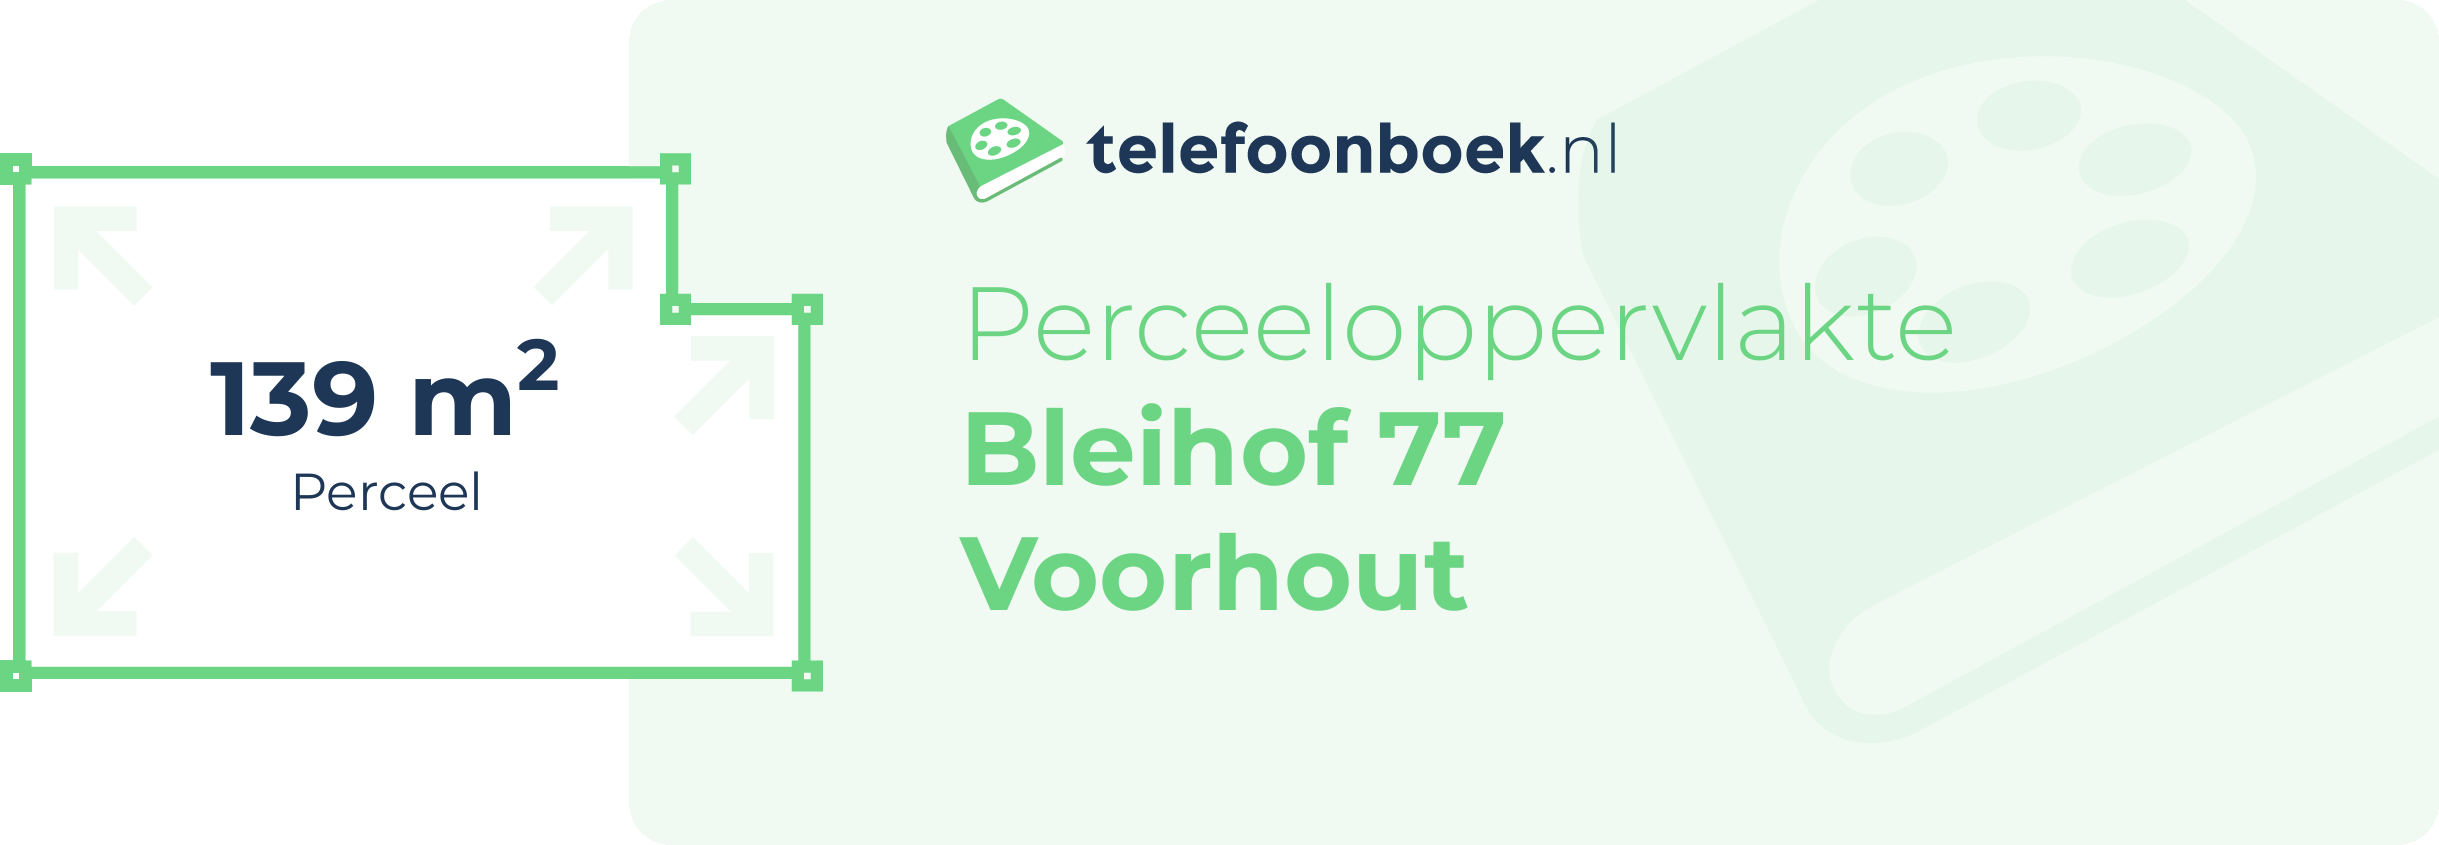 Perceeloppervlakte Bleihof 77 Voorhout